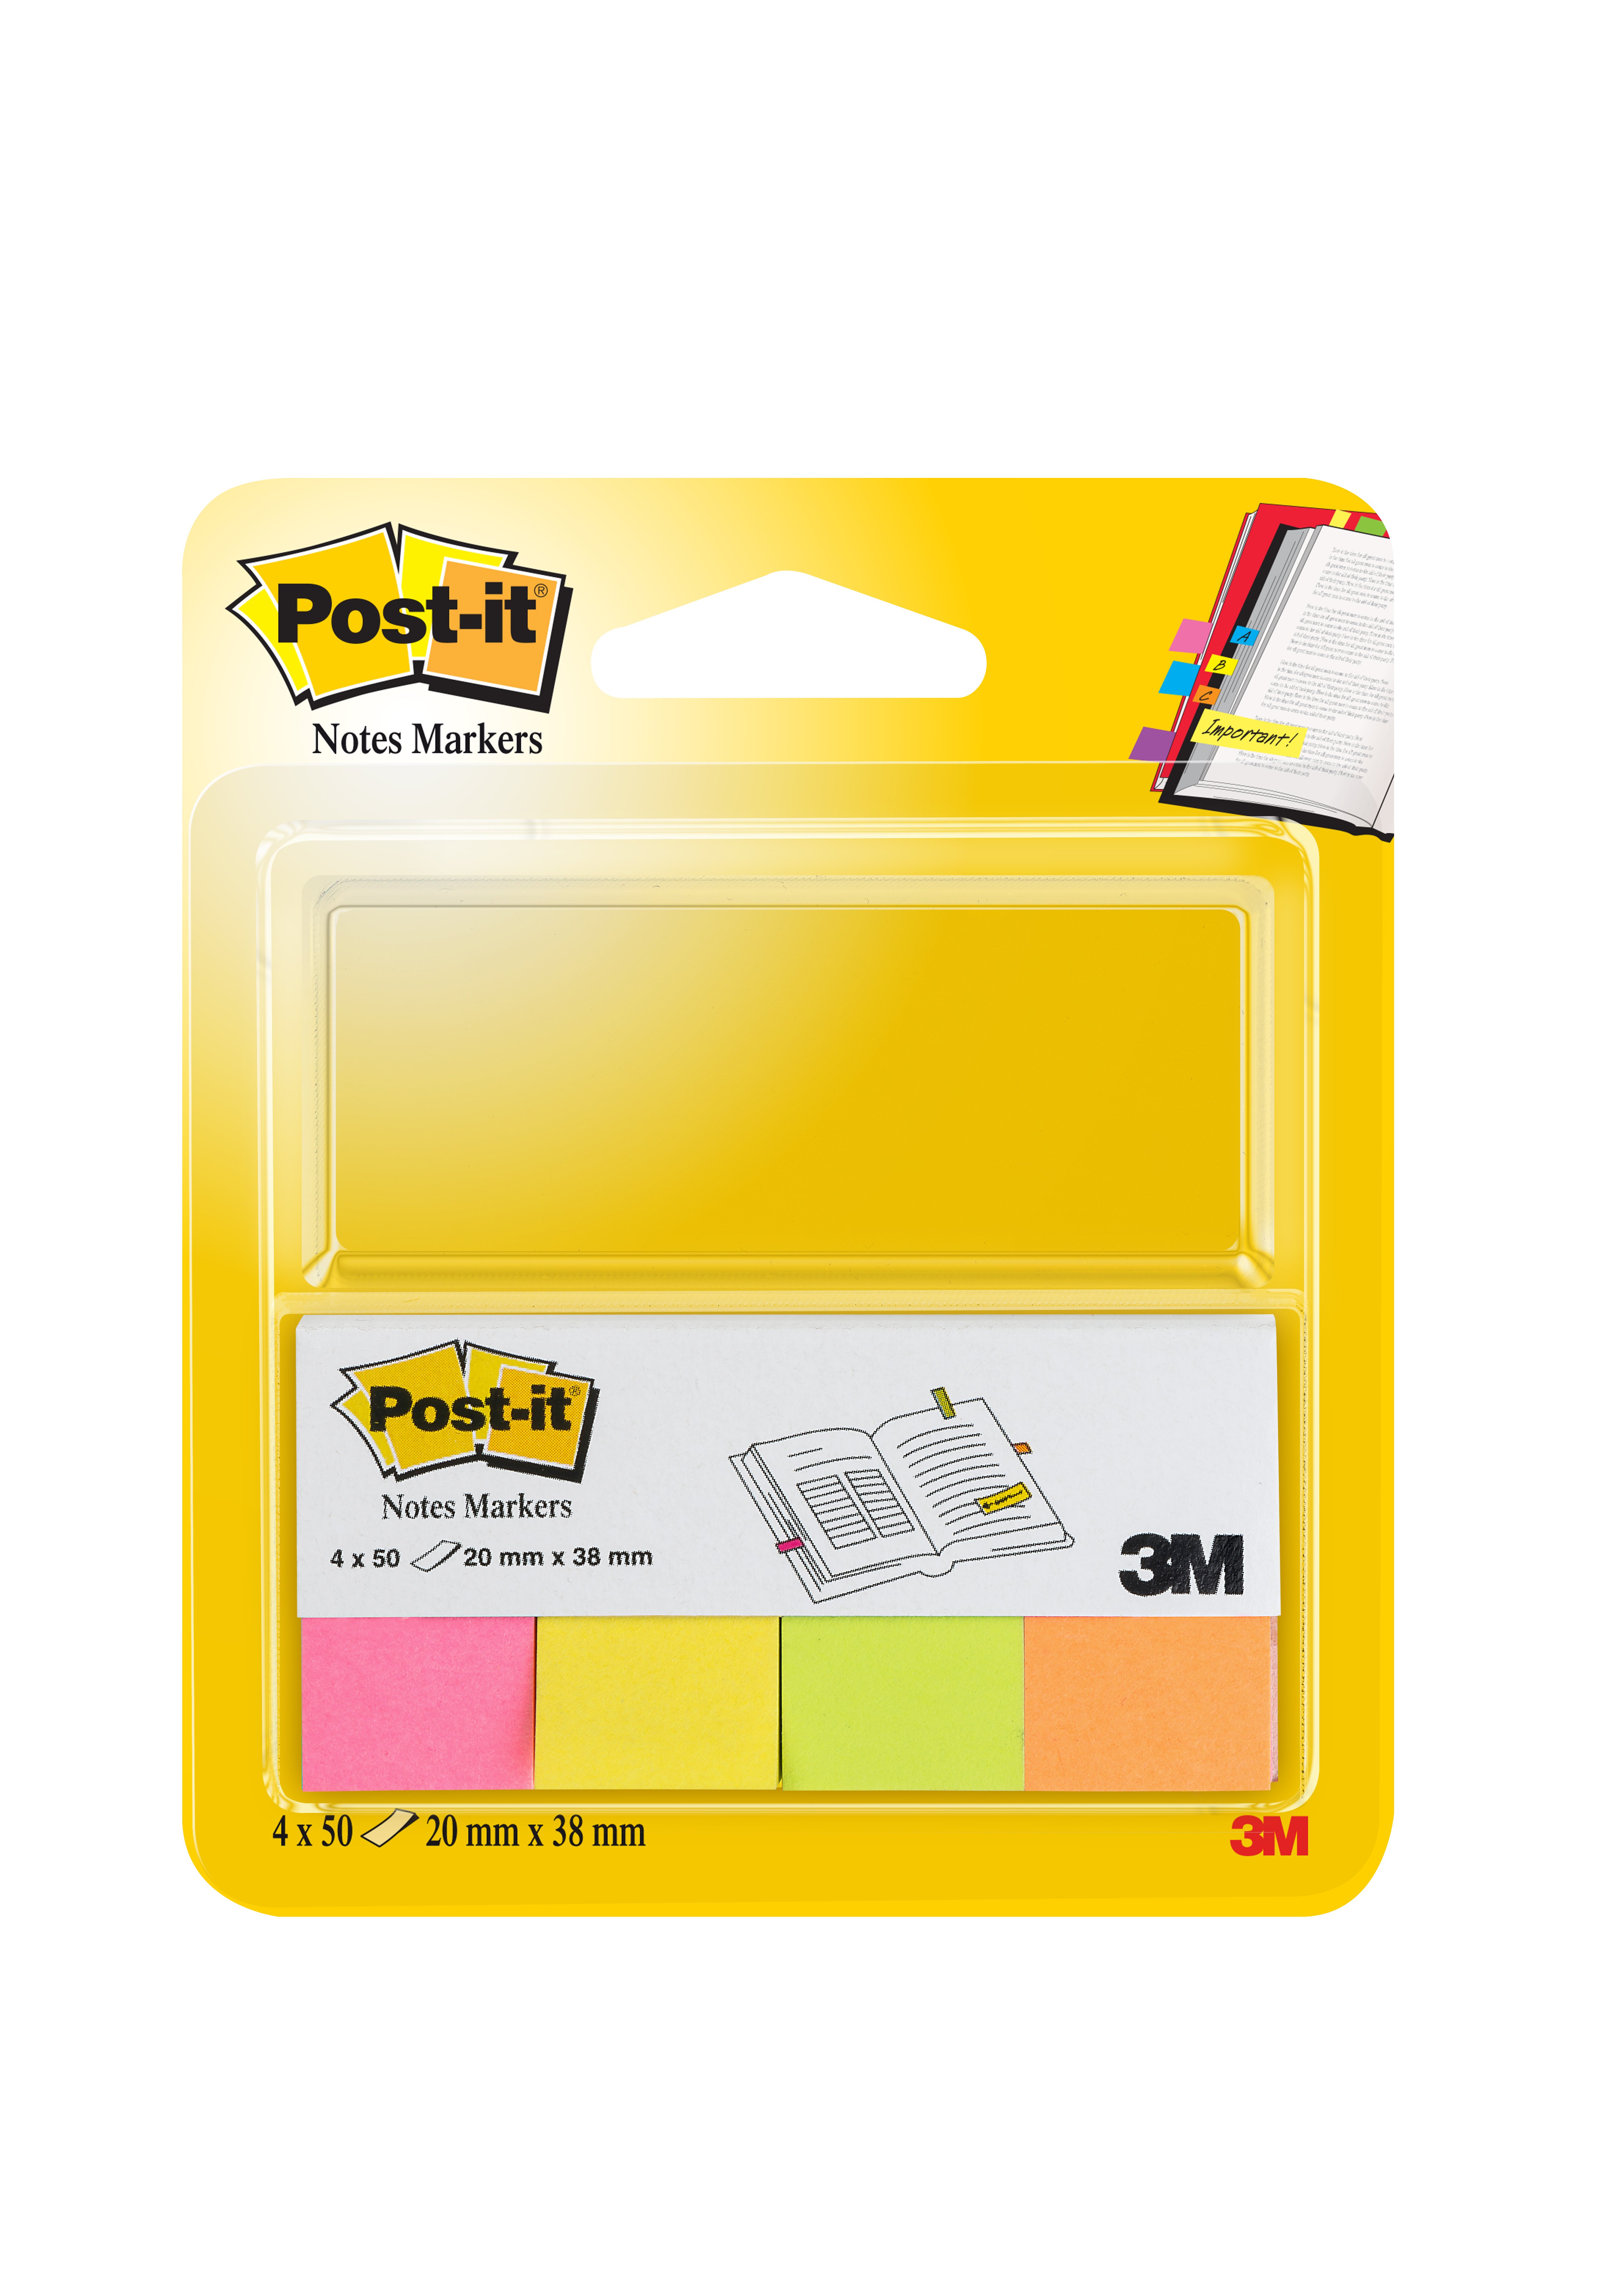 Märflik Post-it Notes rosa, gul, grön, orange 20x38mm 10110131